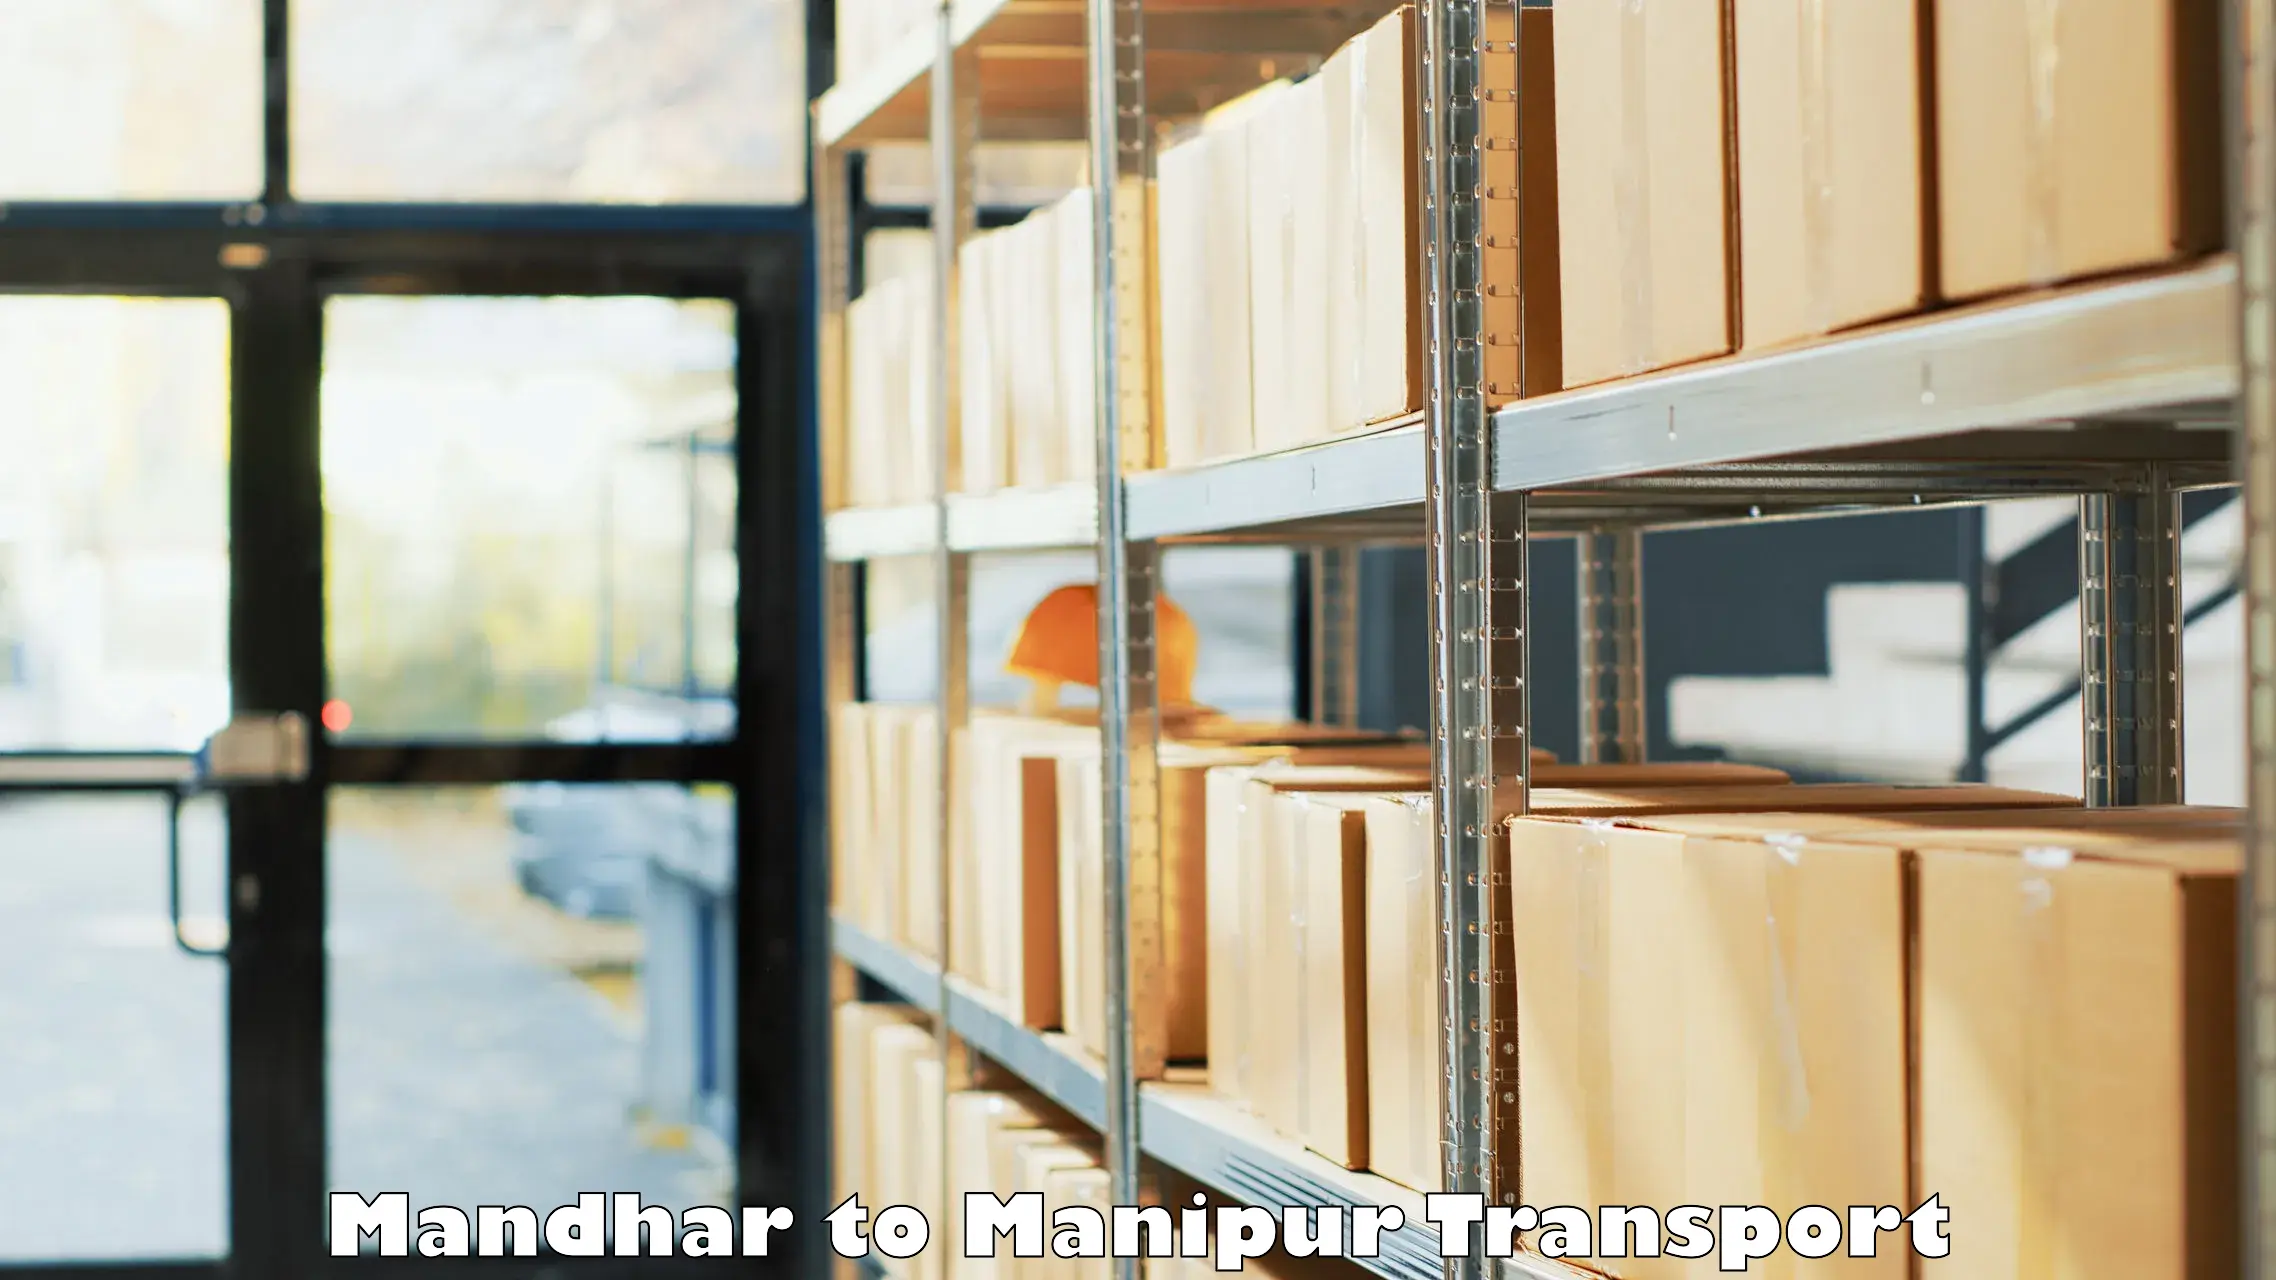 Commercial transport service Mandhar to Imphal